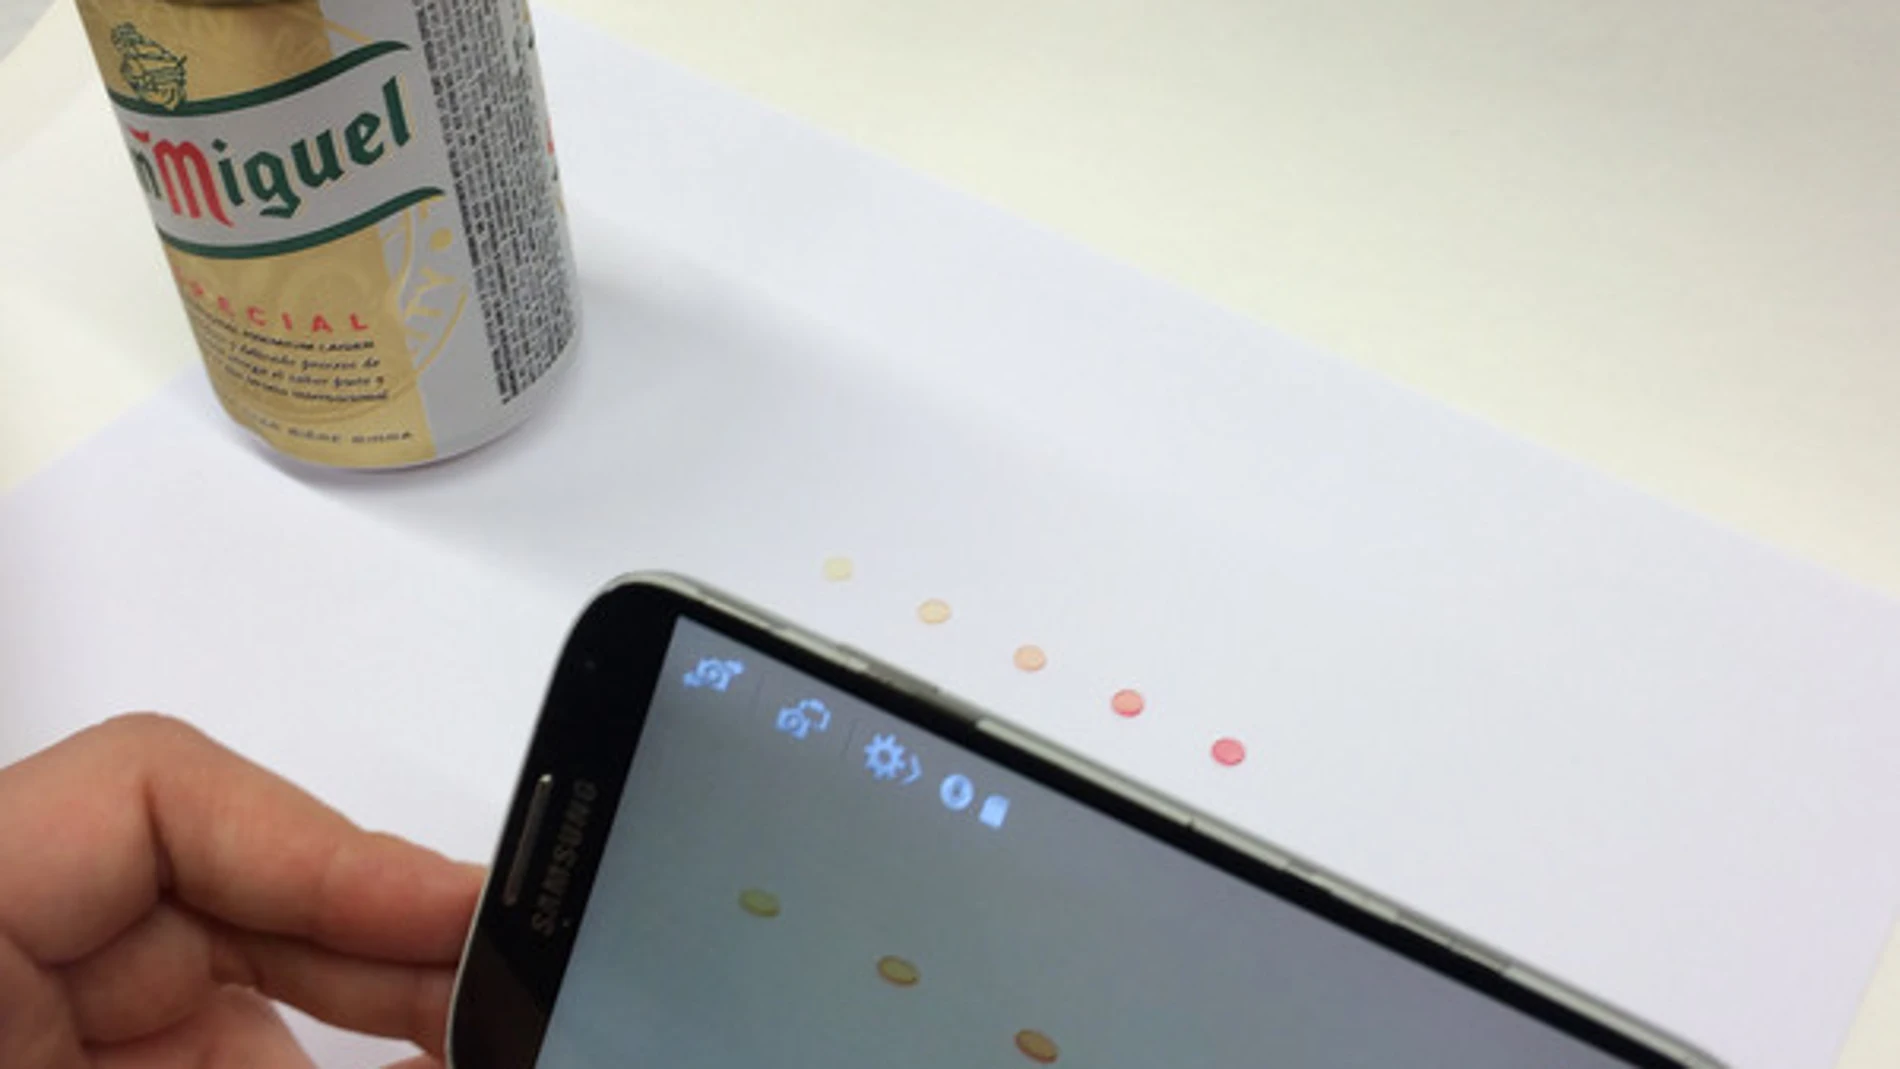 Los sensores cambian de color amarillo a rosa cuando se ponen en contacto con una cerveza con furfural